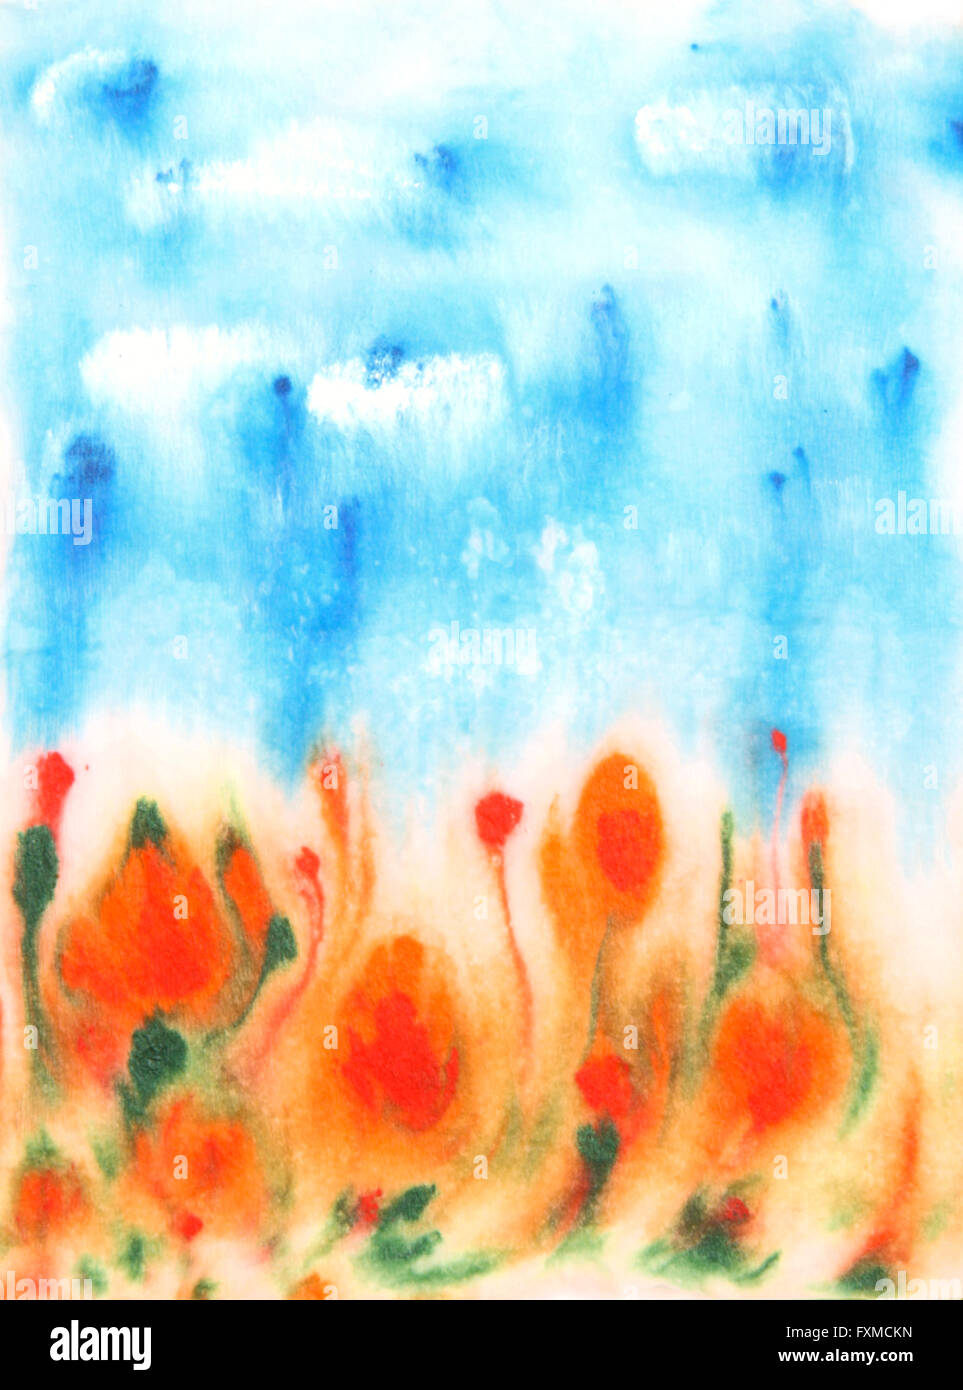 Astratta disegnata a mano ad acquerello: sullo sfondo azzurro del cielo e il verde delle foglie e fiori di colore rosso. Ottimo per le textures, vintage design e carta da parati di lusso Foto Stock